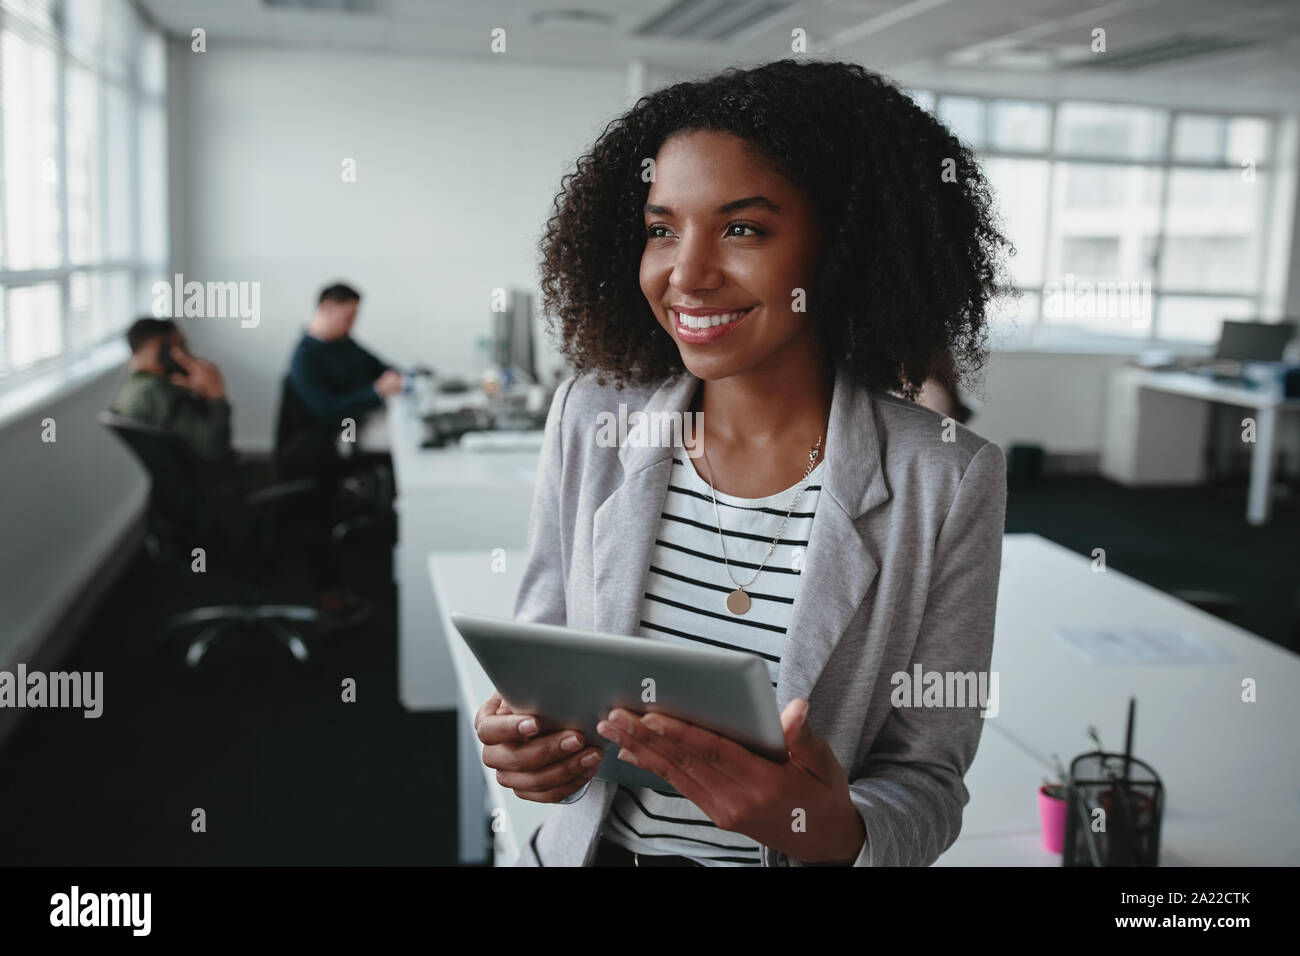 Portrait d'une jeune femme noire réussie holding digital tablet in hand looking away at office Banque D'Images